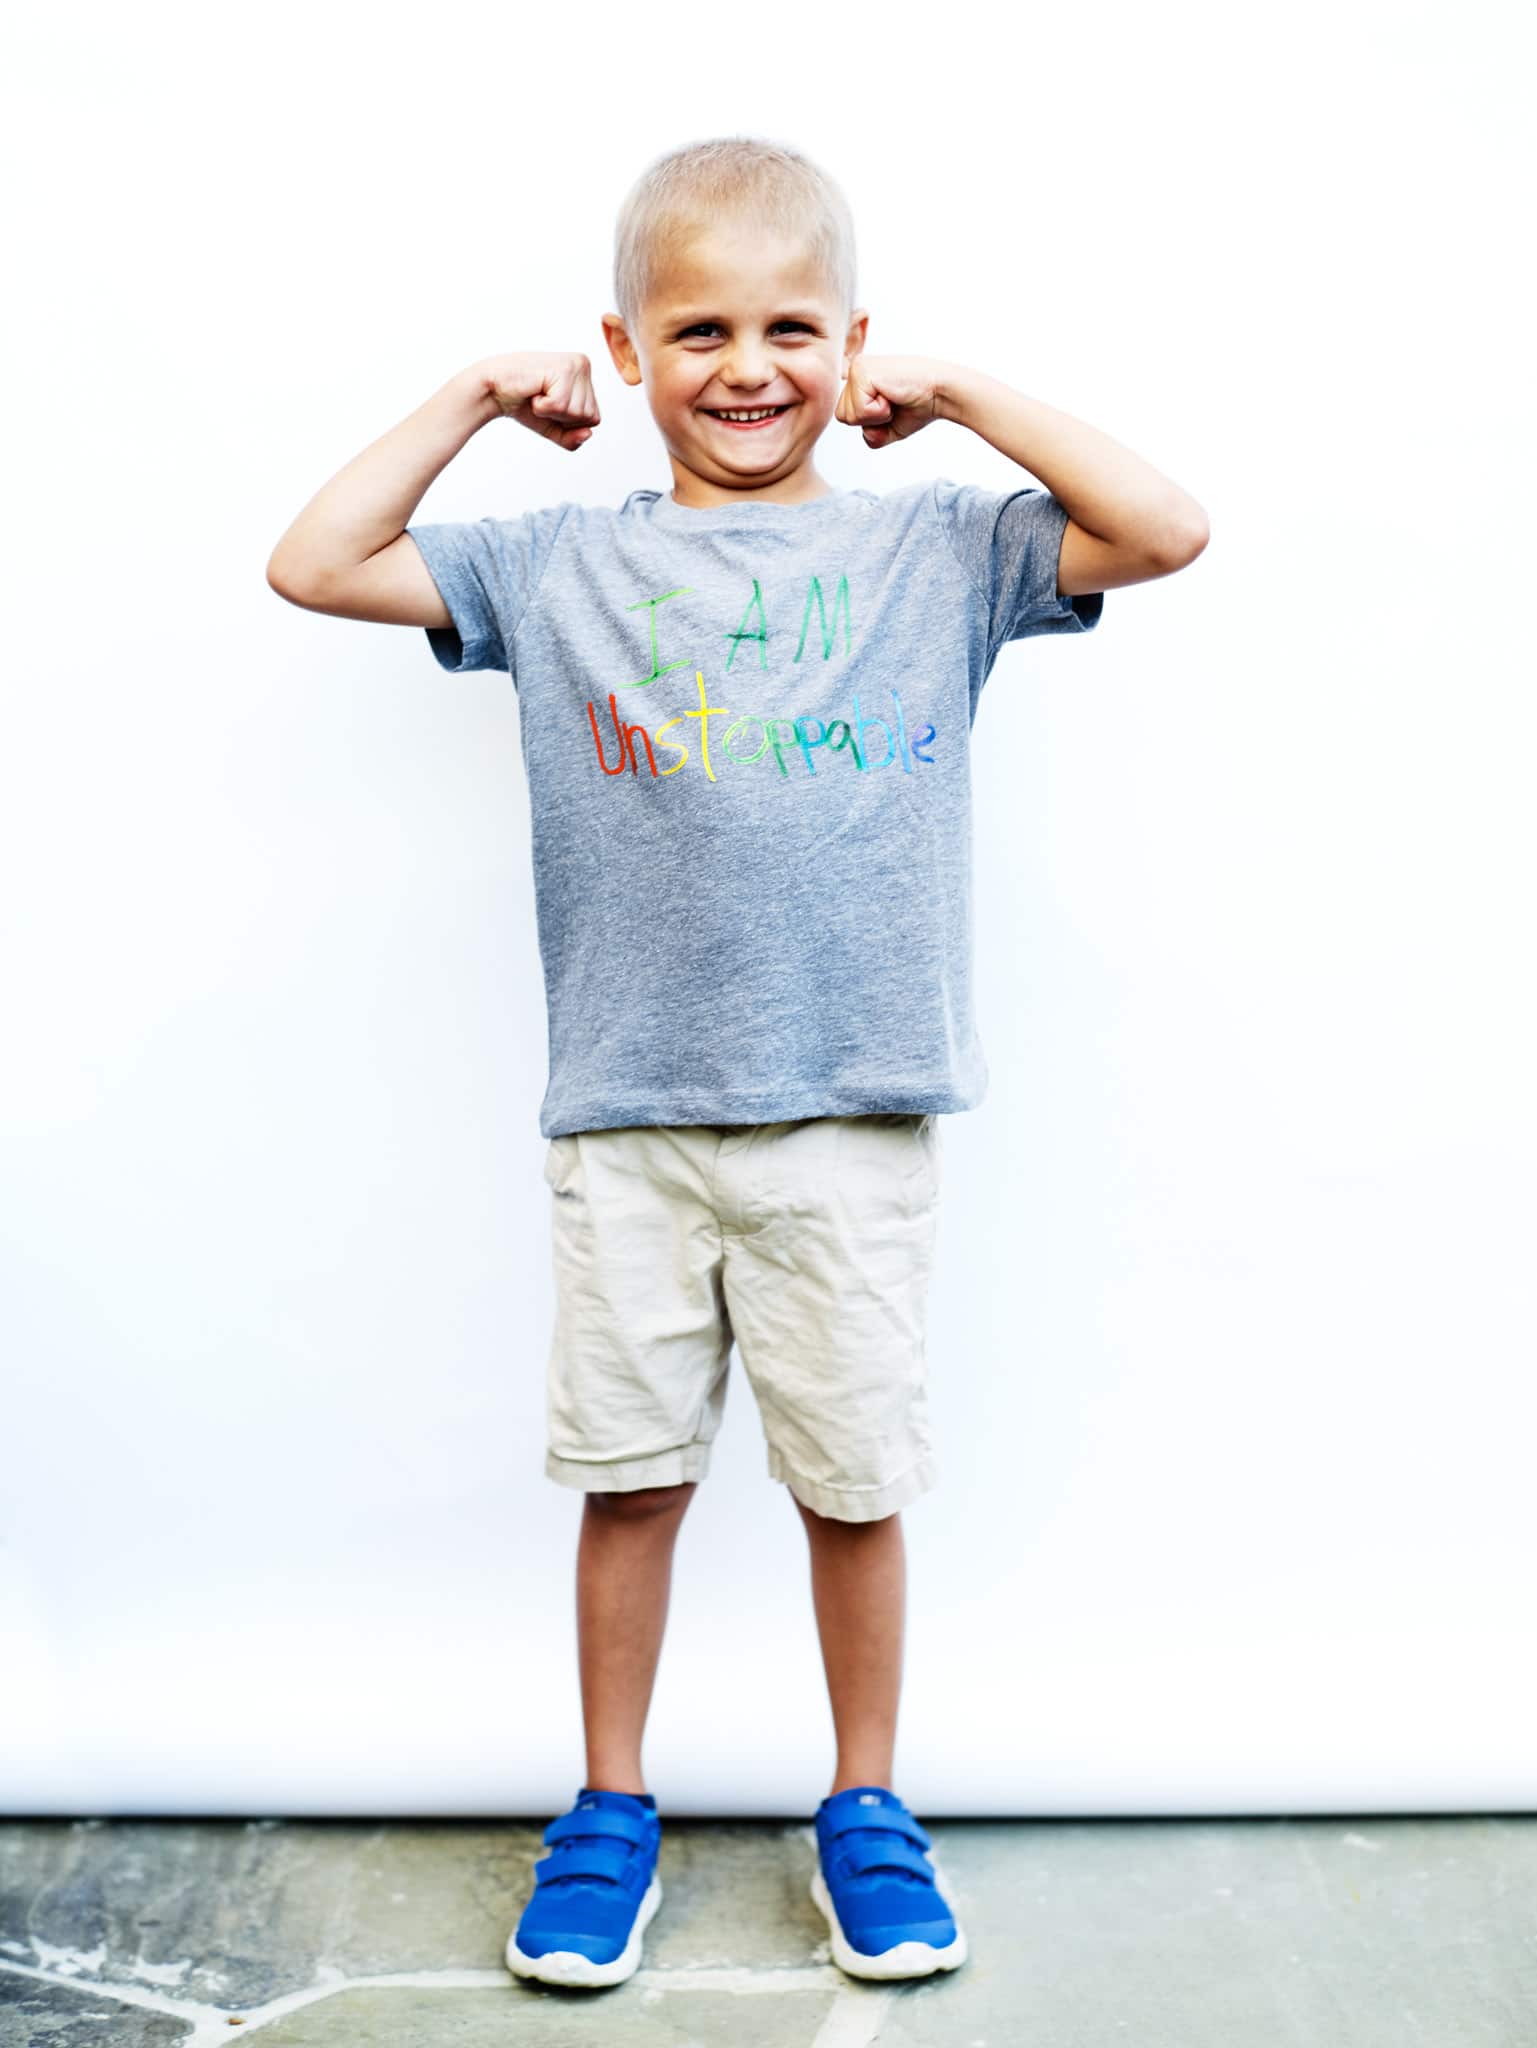 boy flexing muscles wearing inspirational shirt